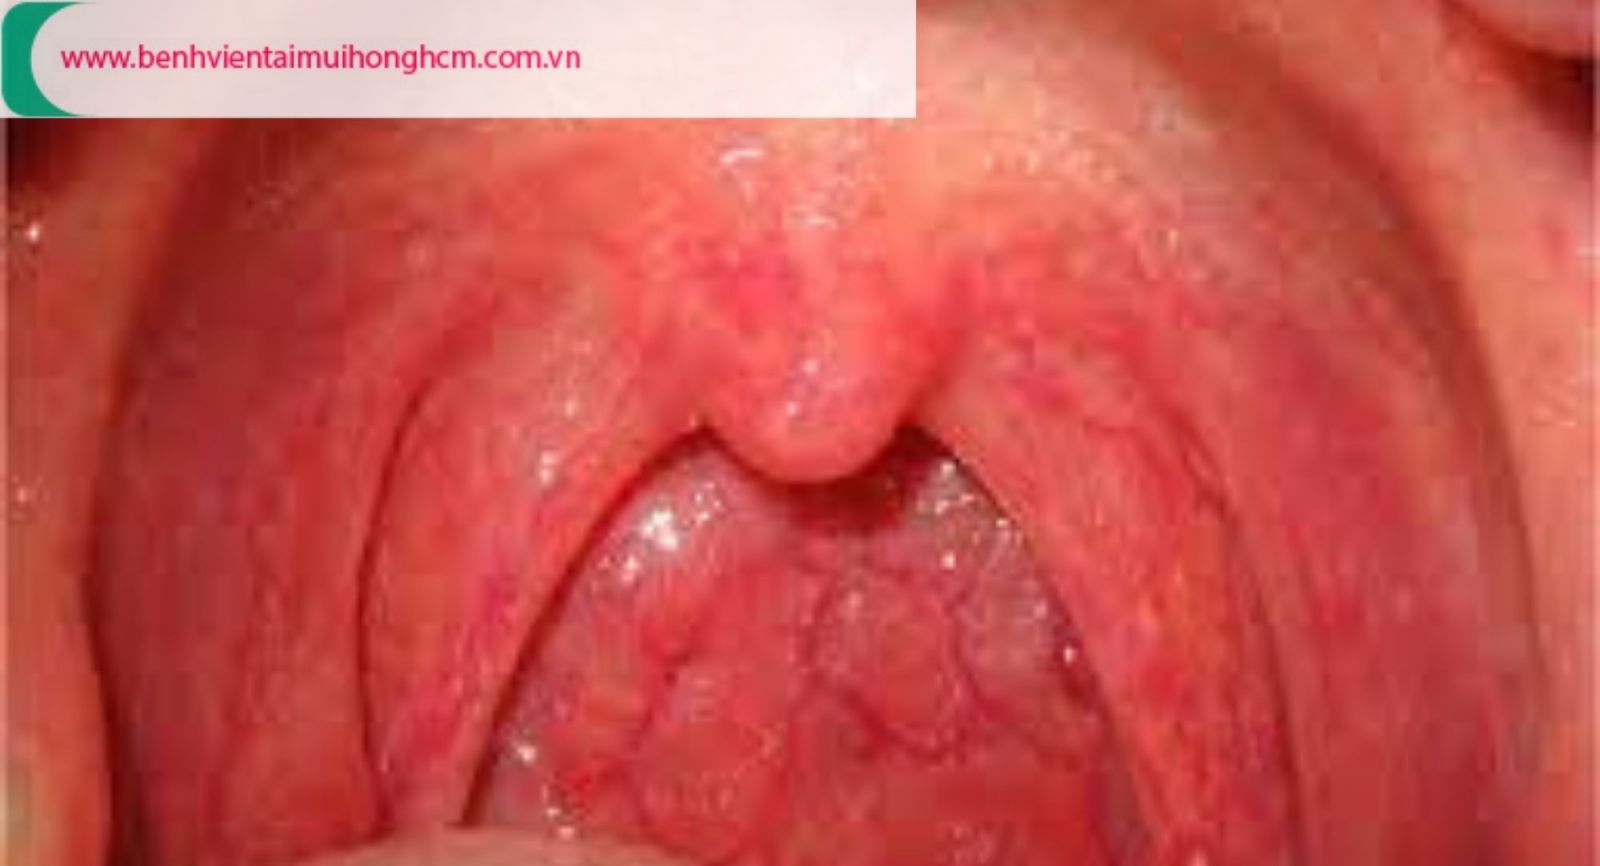 Phân biệt hình ảnh viêm họng hạt - họng bình thường